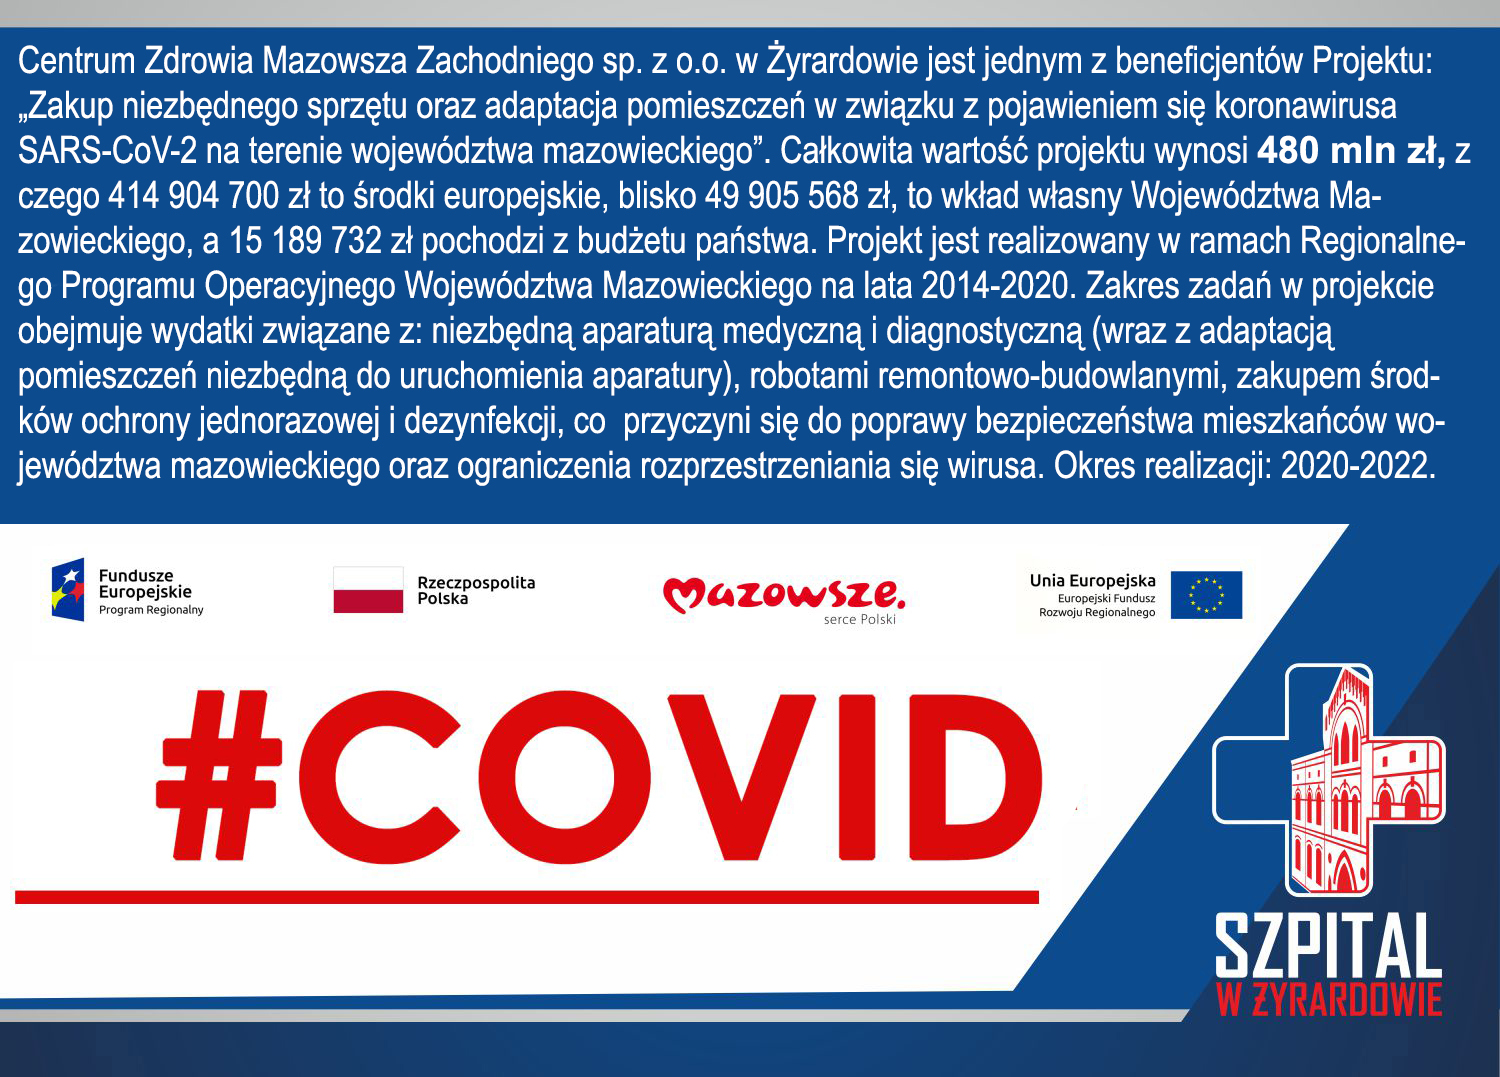 CZMZ beneficjentem projektu „Zakup niezbędnego sprzętu oraz adaptacja pomieszczeń w związku z pojawieniem się koronawirusa SARS-CoV-2 na terenie województwa mazowieckiego” .